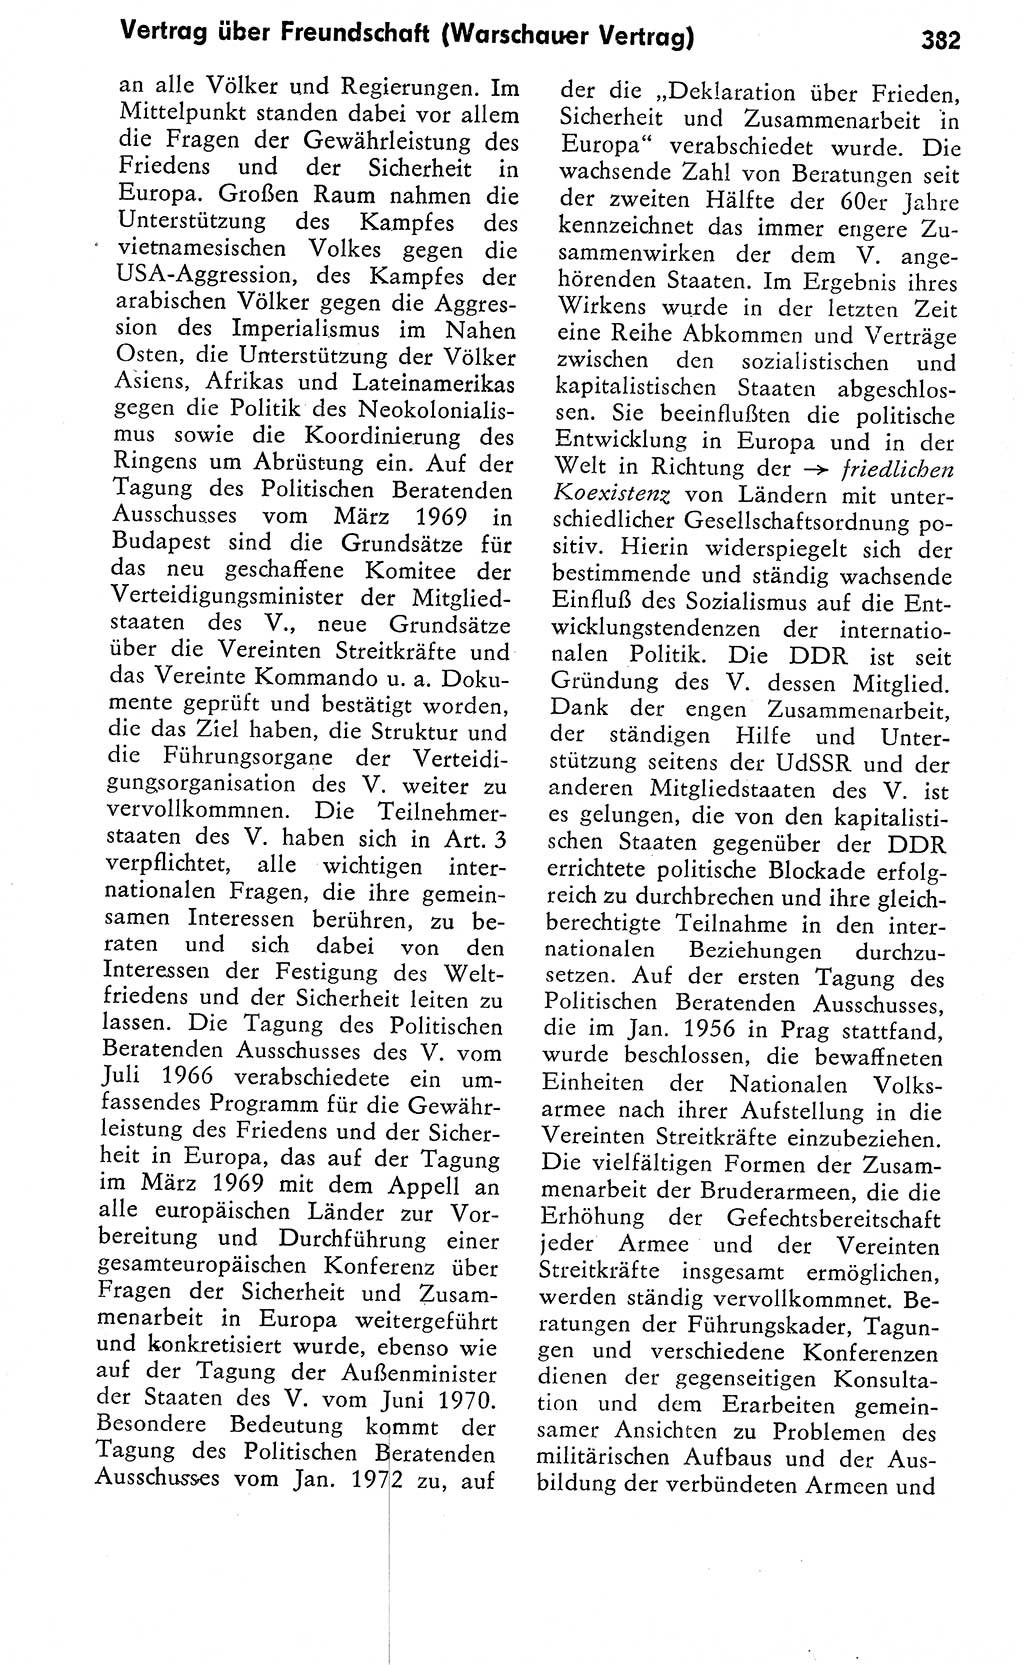 Wörterbuch zum sozialistischen Staat [Deutsche Demokratische Republik (DDR)] 1974, Seite 382 (Wb. soz. St. DDR 1974, S. 382)